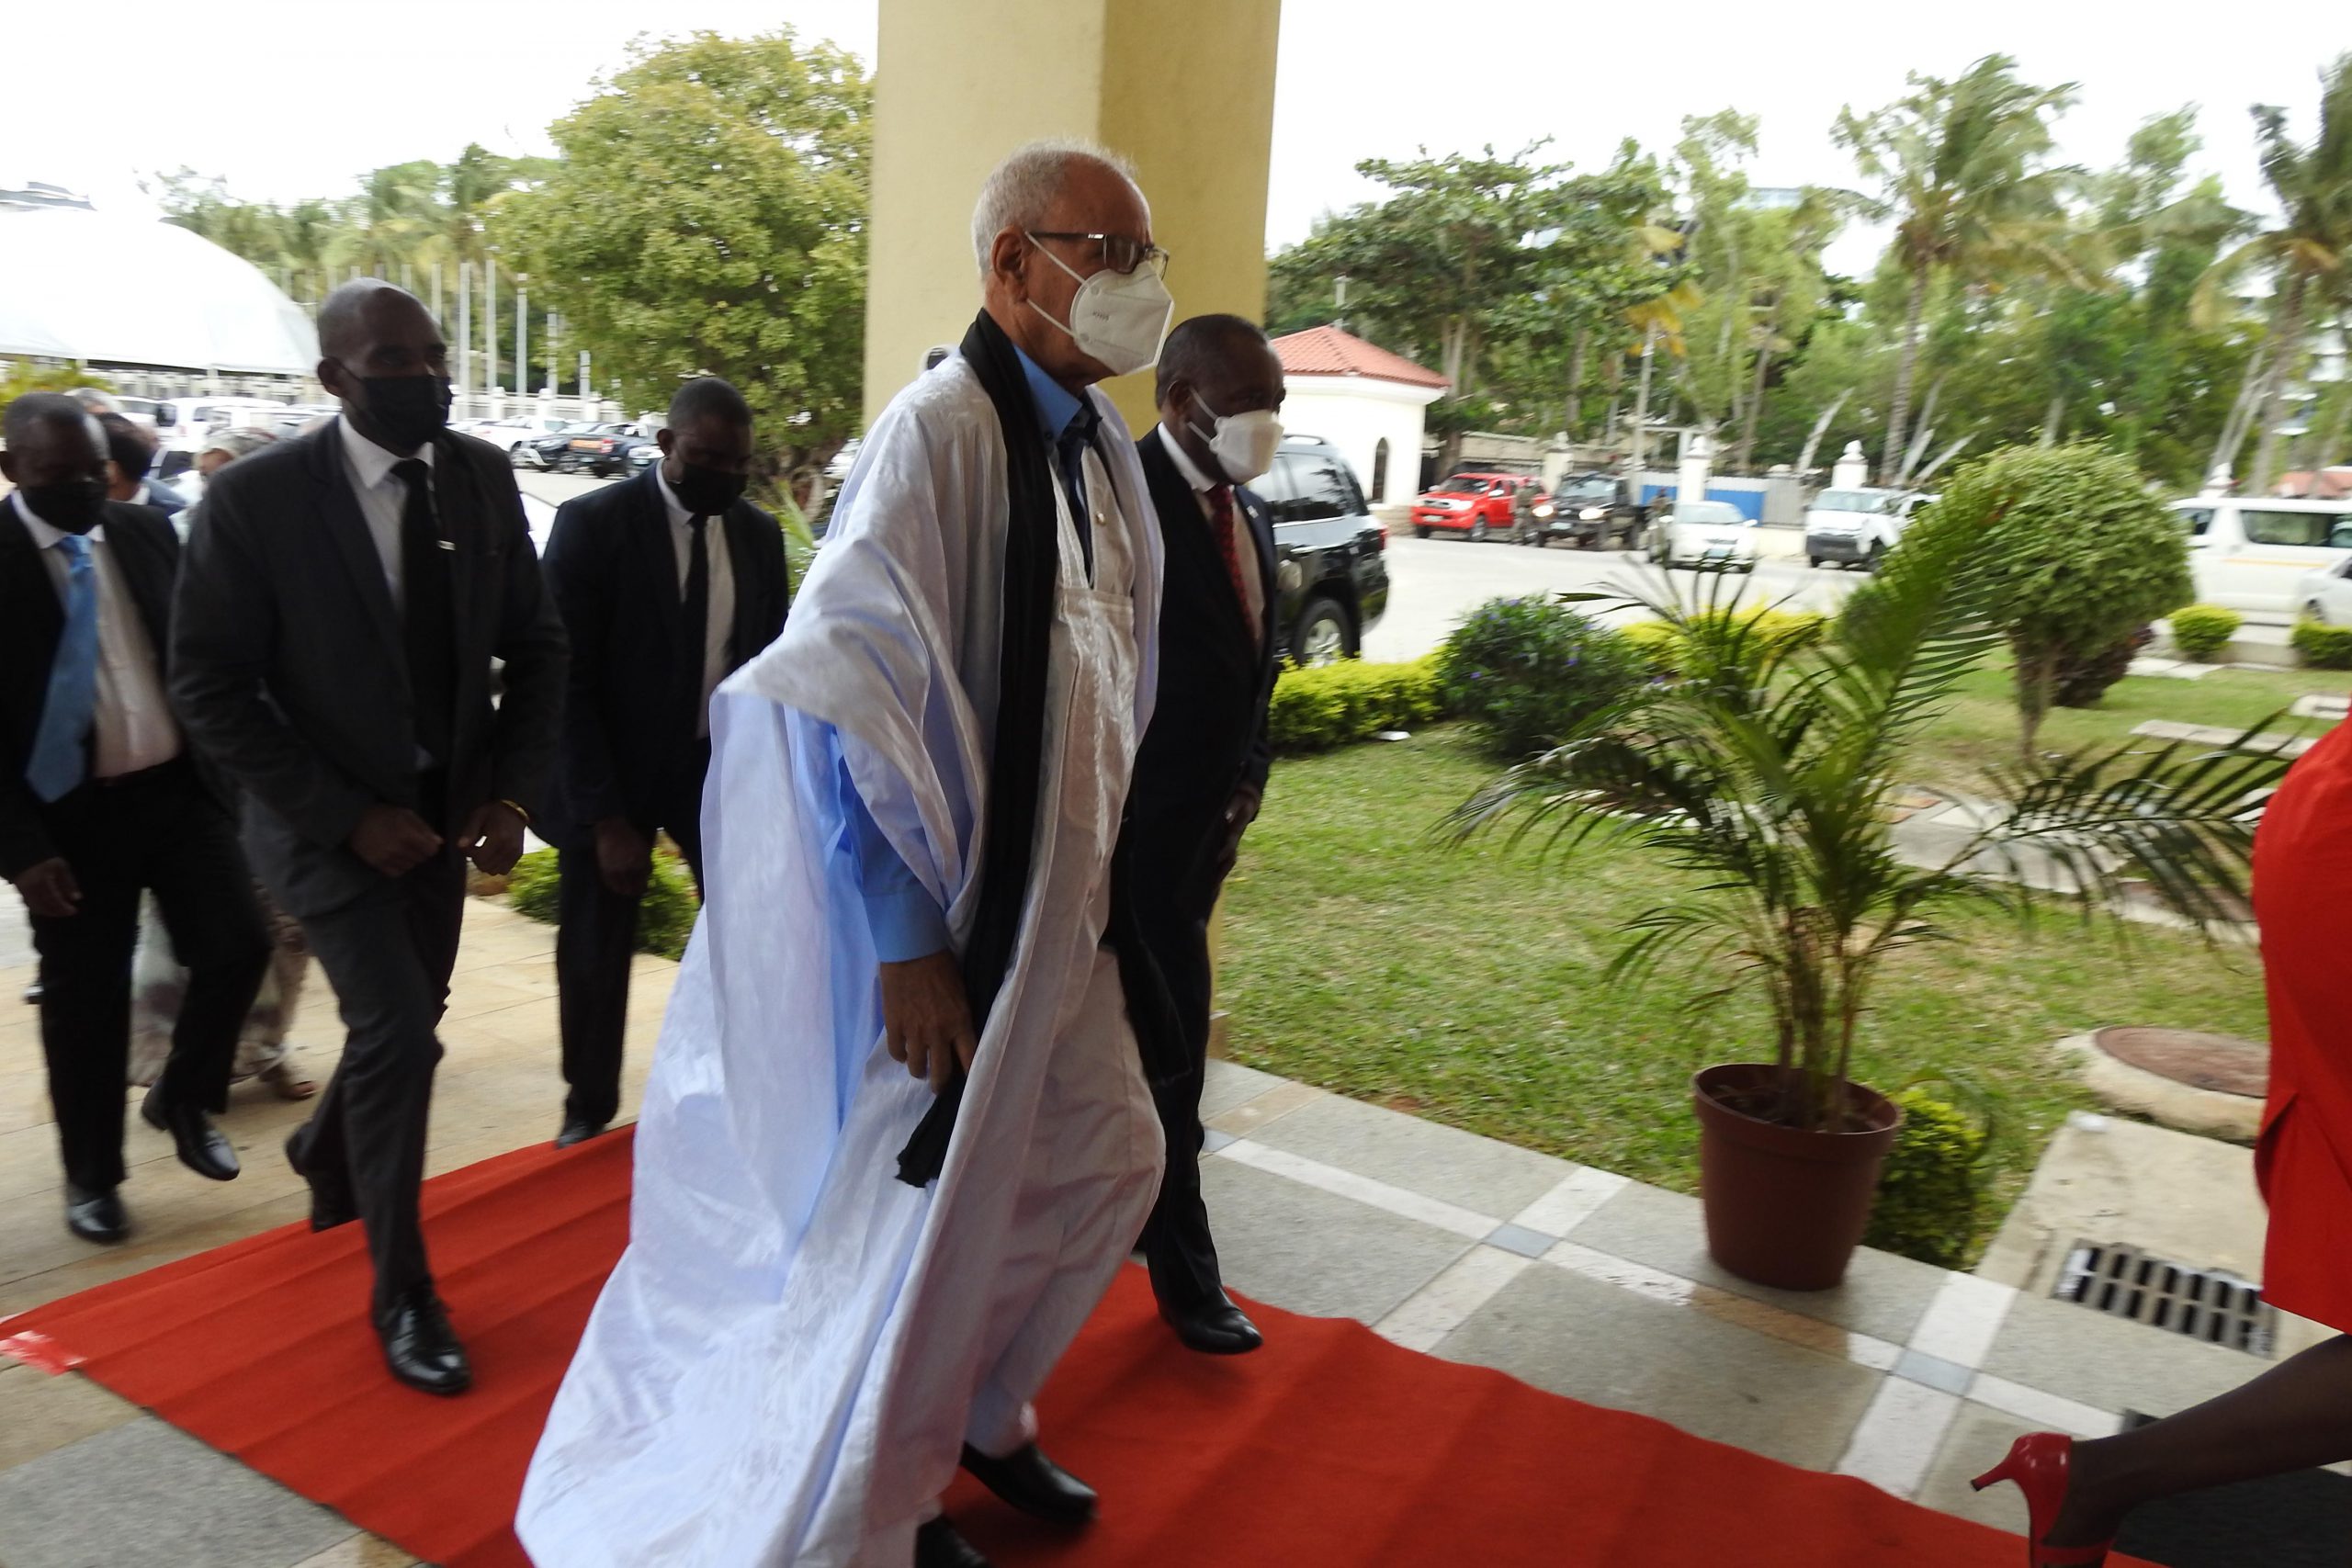 الرئيس ابراهيم غالي يواصل زيارته الرسمية إلى الموزمبيق لليوم الثالث